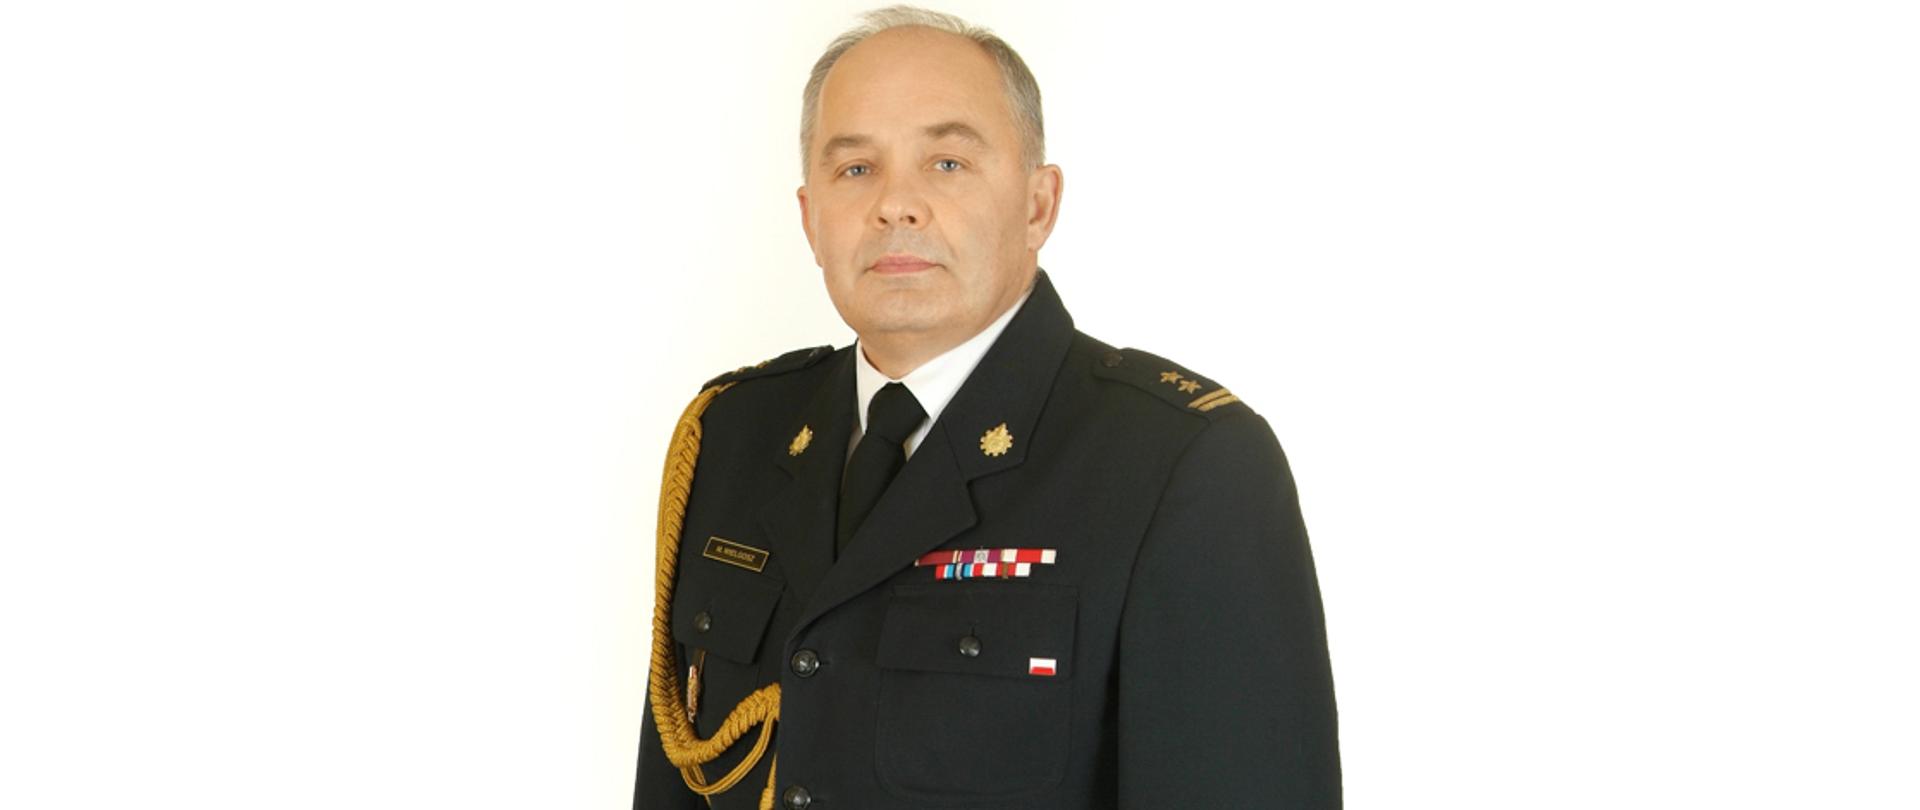 Zdjęcie przedstawia komendanta miejskiego państwowej straży pożarnej w Skierniewicach w mundurze wyjściowym na białym tle.